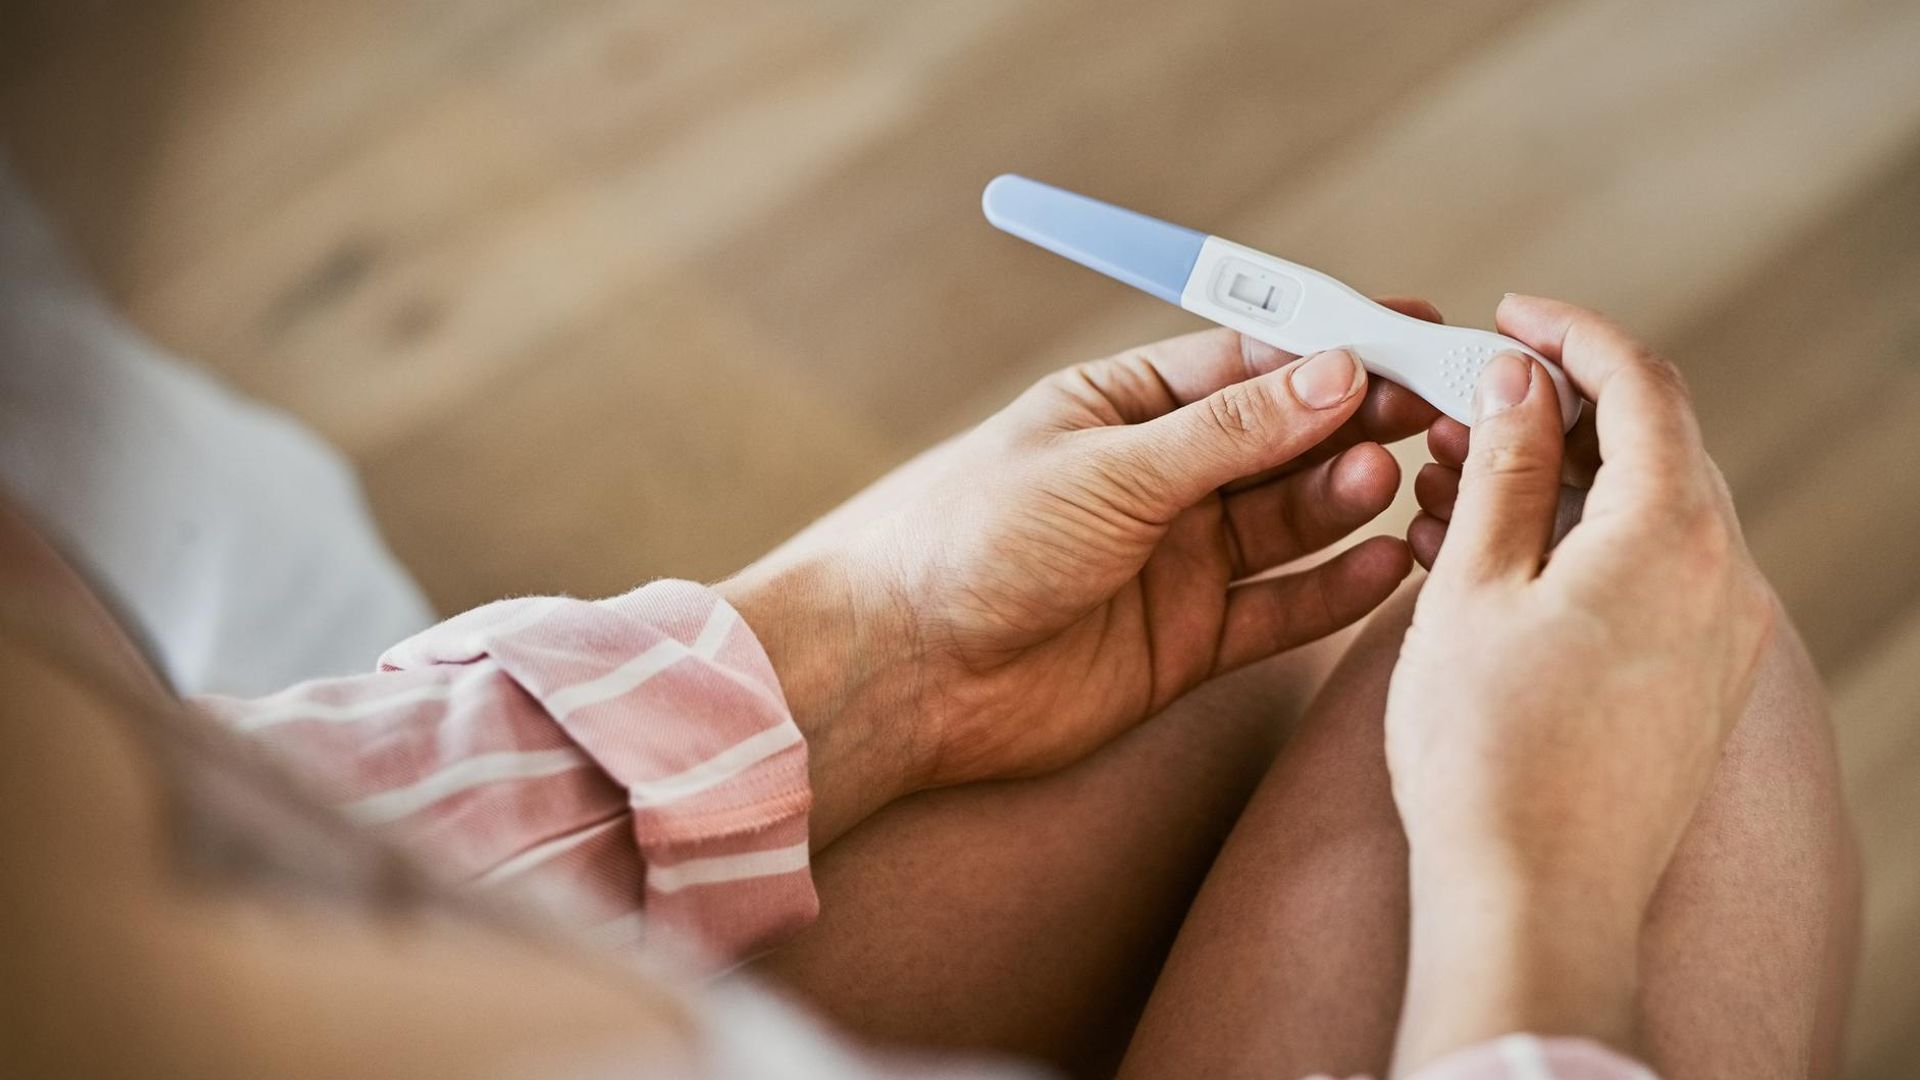 fertilidad o proceso de reproducci n genera ansiedad mujer mirando un test de embarazo 